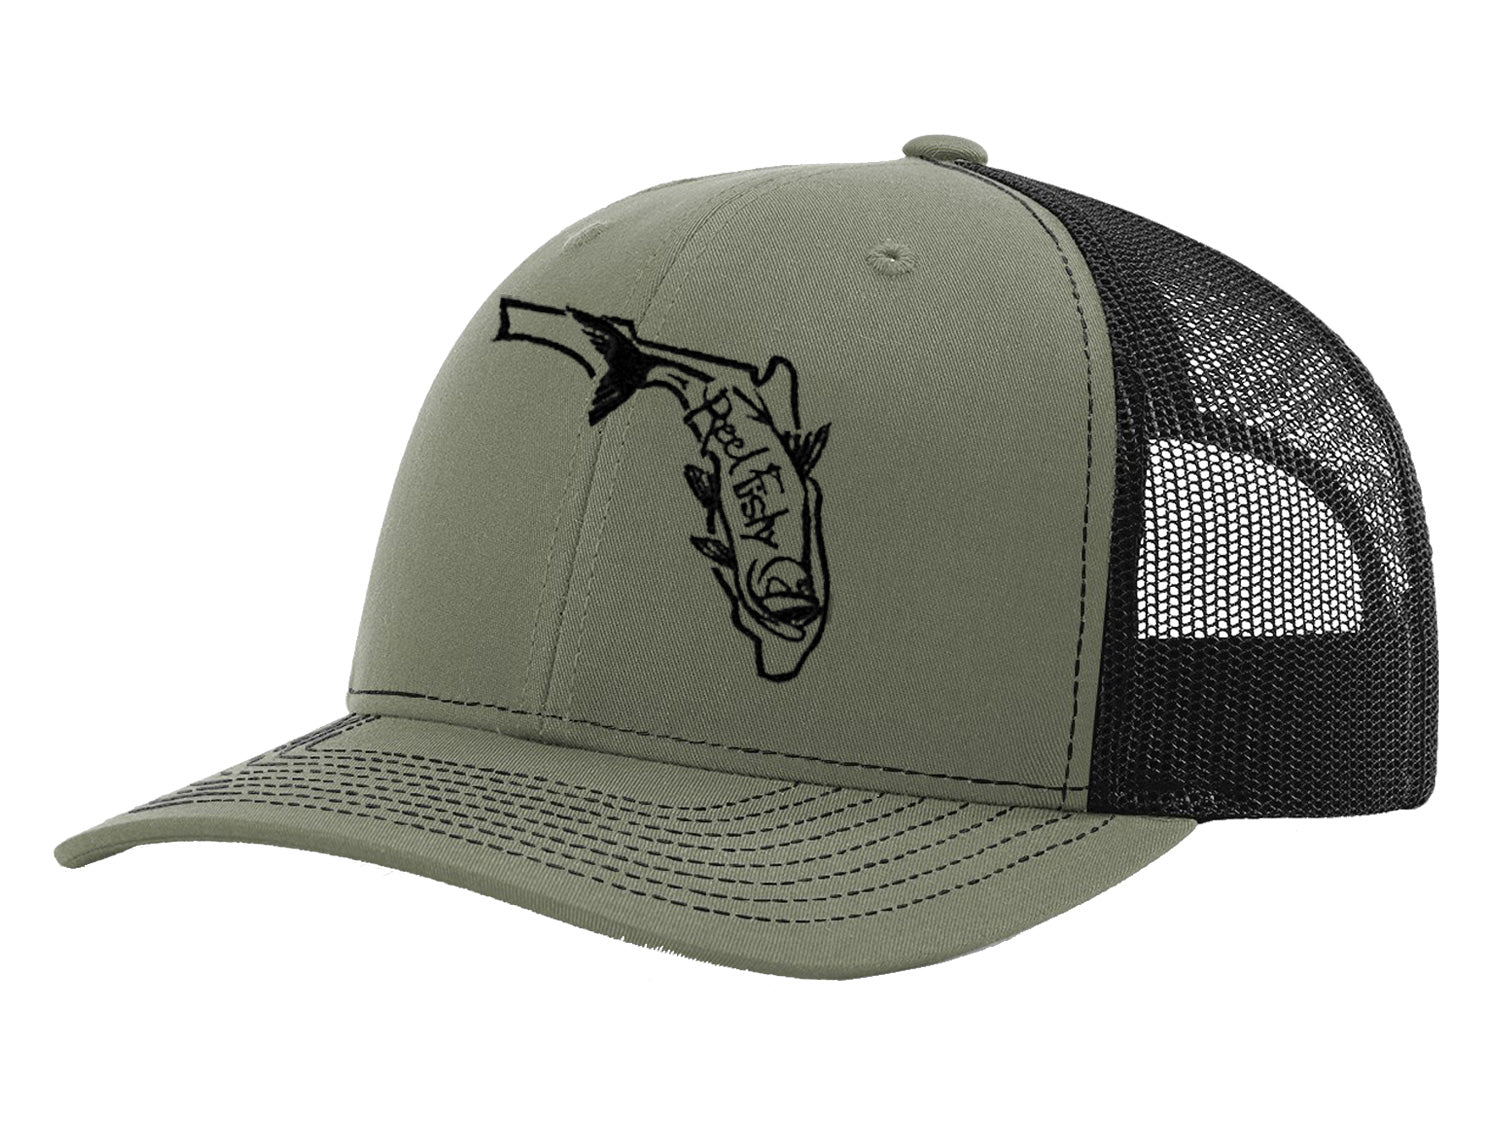 Tarpon Fishing Trucker Hat, Florida Logo Snapback Trucker Cap, Fishing Hat Olive w/Black Logo